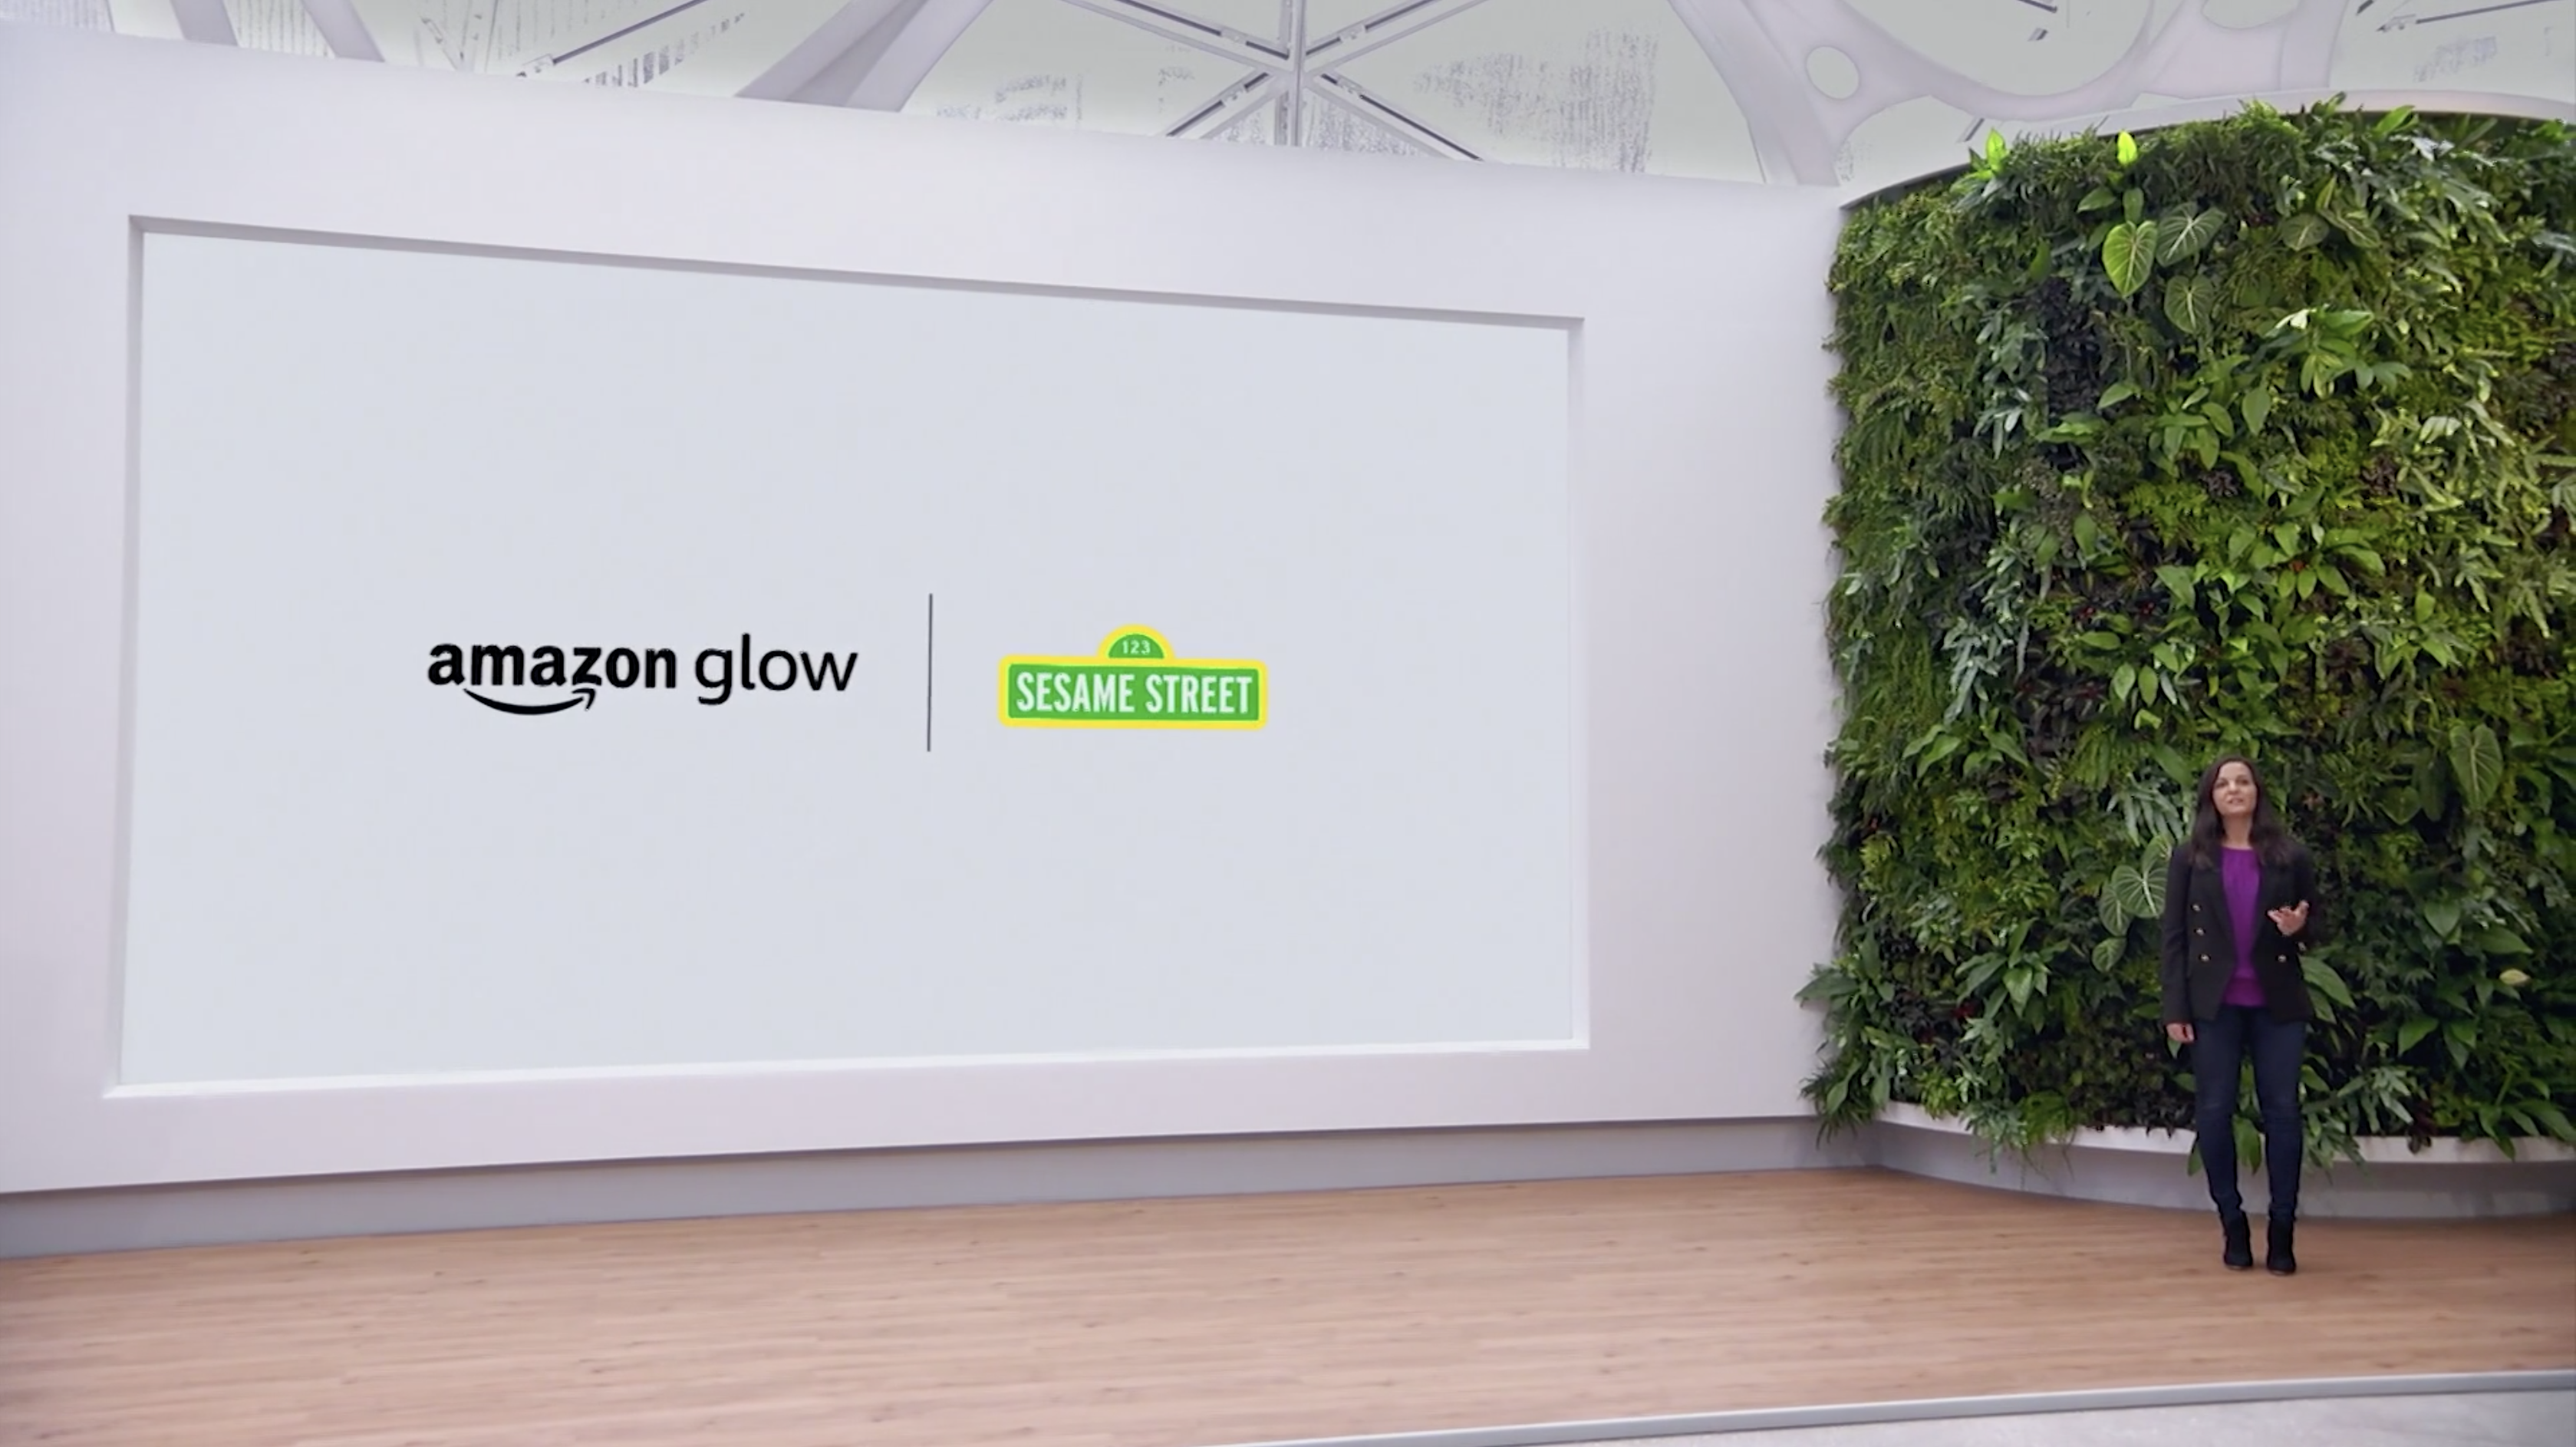 Amazon Glow unveiled at Amazon event